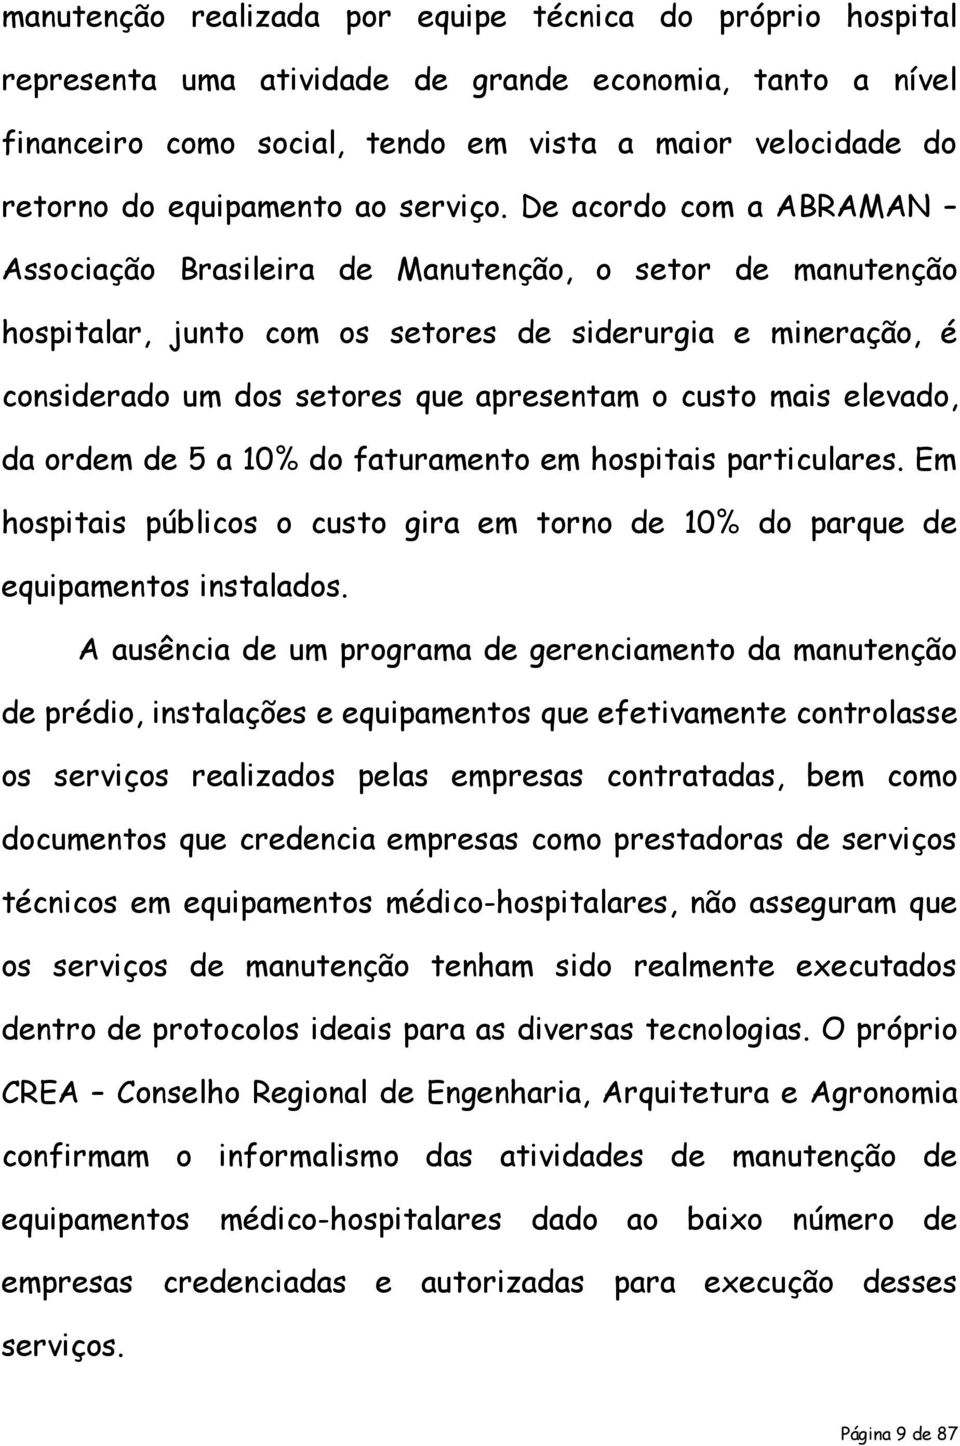 De acordo com a ABRAMAN Associação Brasileira de Manutenção, o setor de manutenção hospitalar, junto com os setores de siderurgia e mineração, é considerado um dos setores que apresentam o custo mais